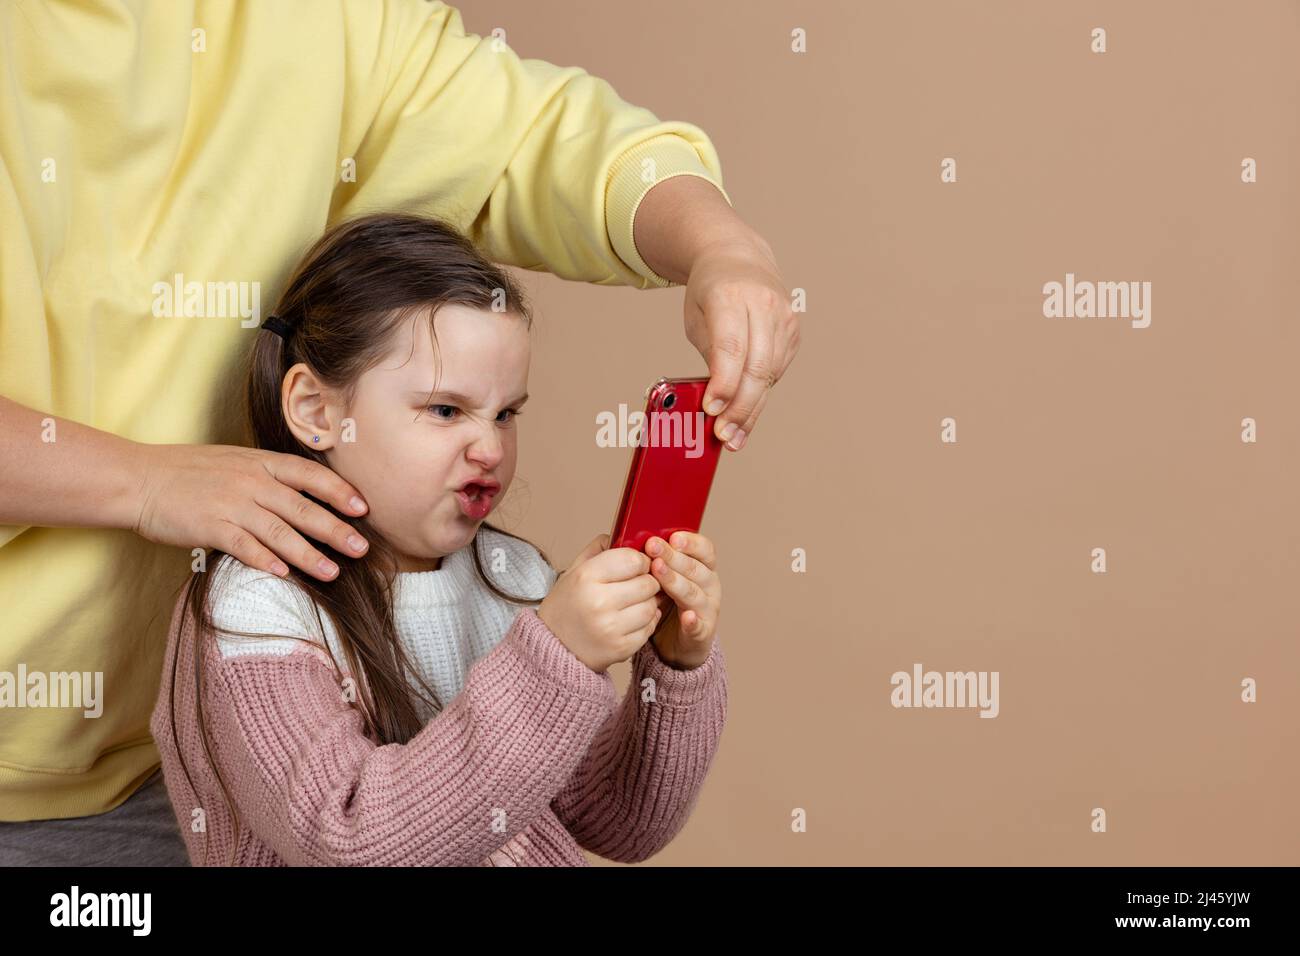 Retrato de los padres alejando el smartphone de las manos de las niñas, fondo beige. Hija enojada sostenga el teléfono apretado y resista. Concepto de prevención de Foto de stock